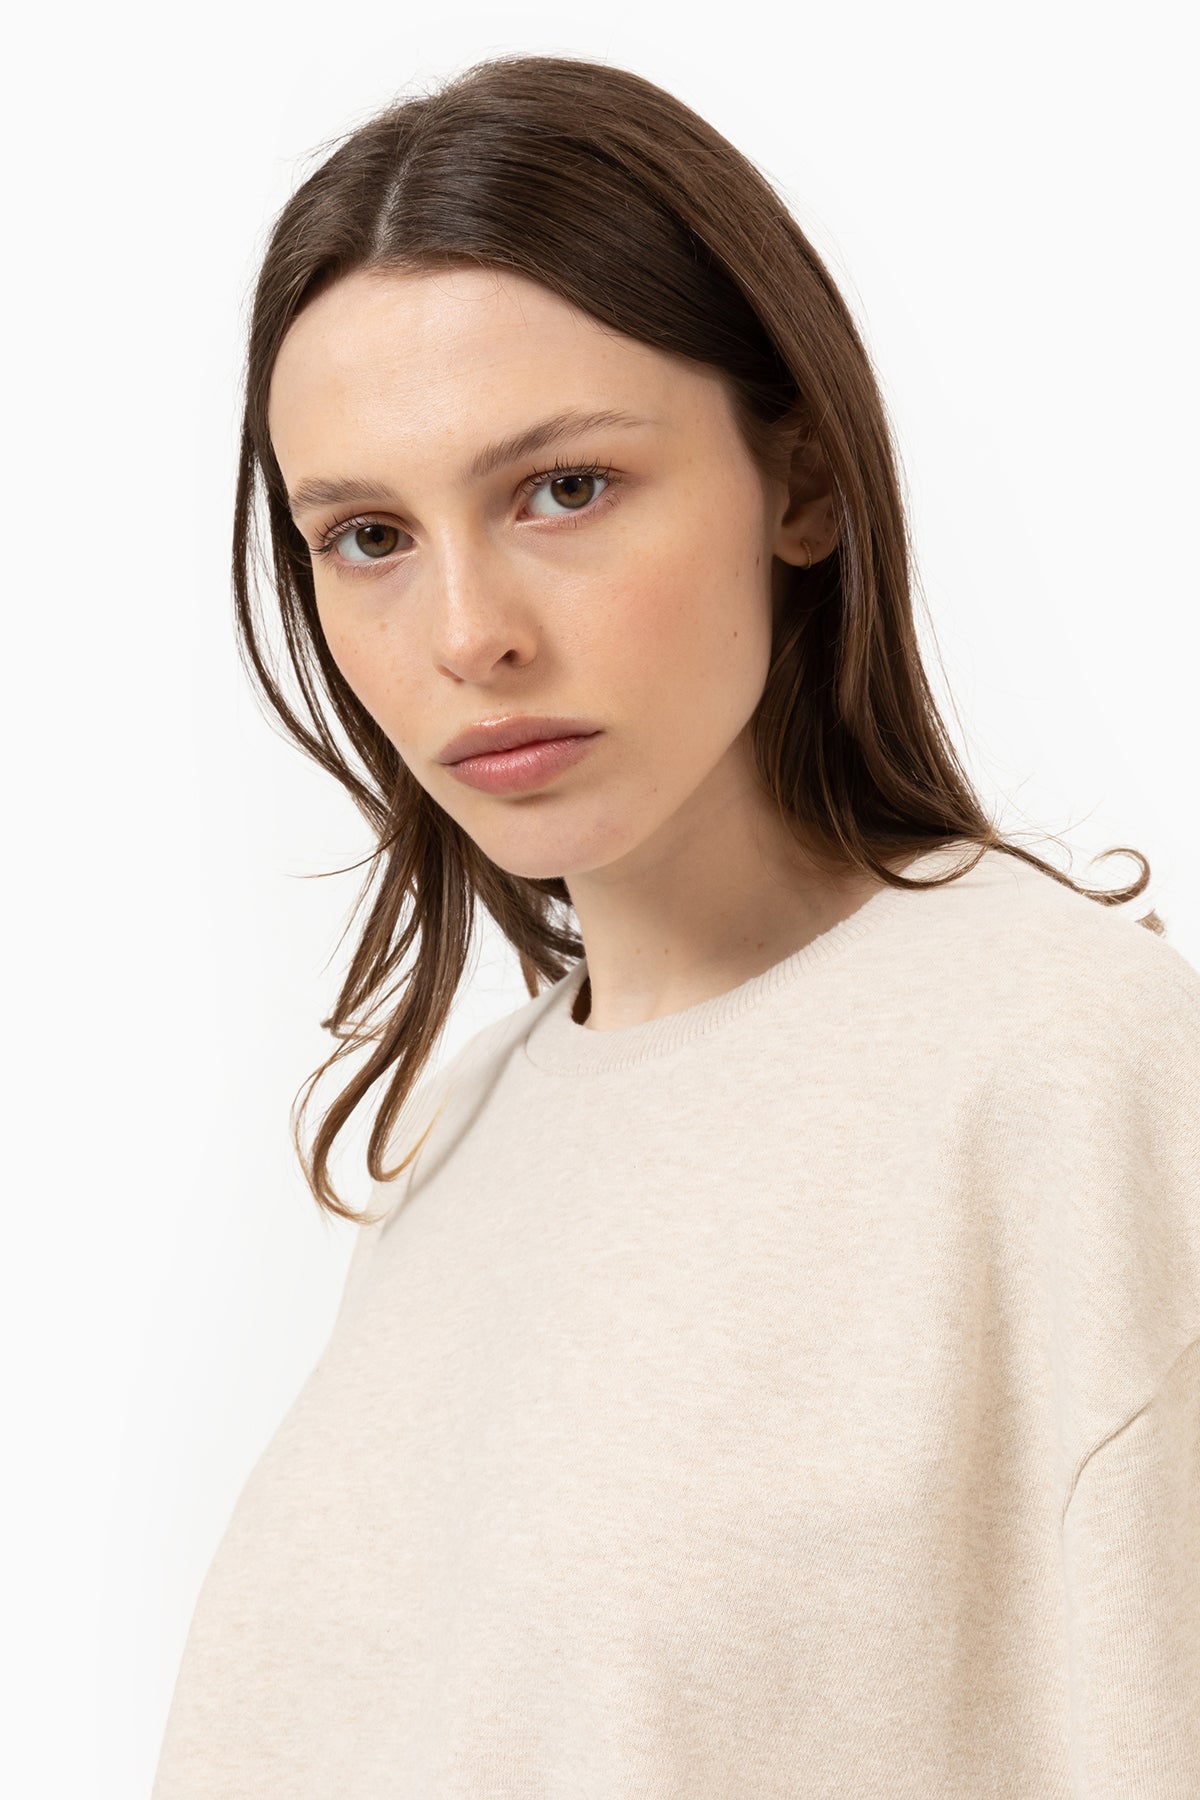 Sweatshirt Clémence | Marled Ivory